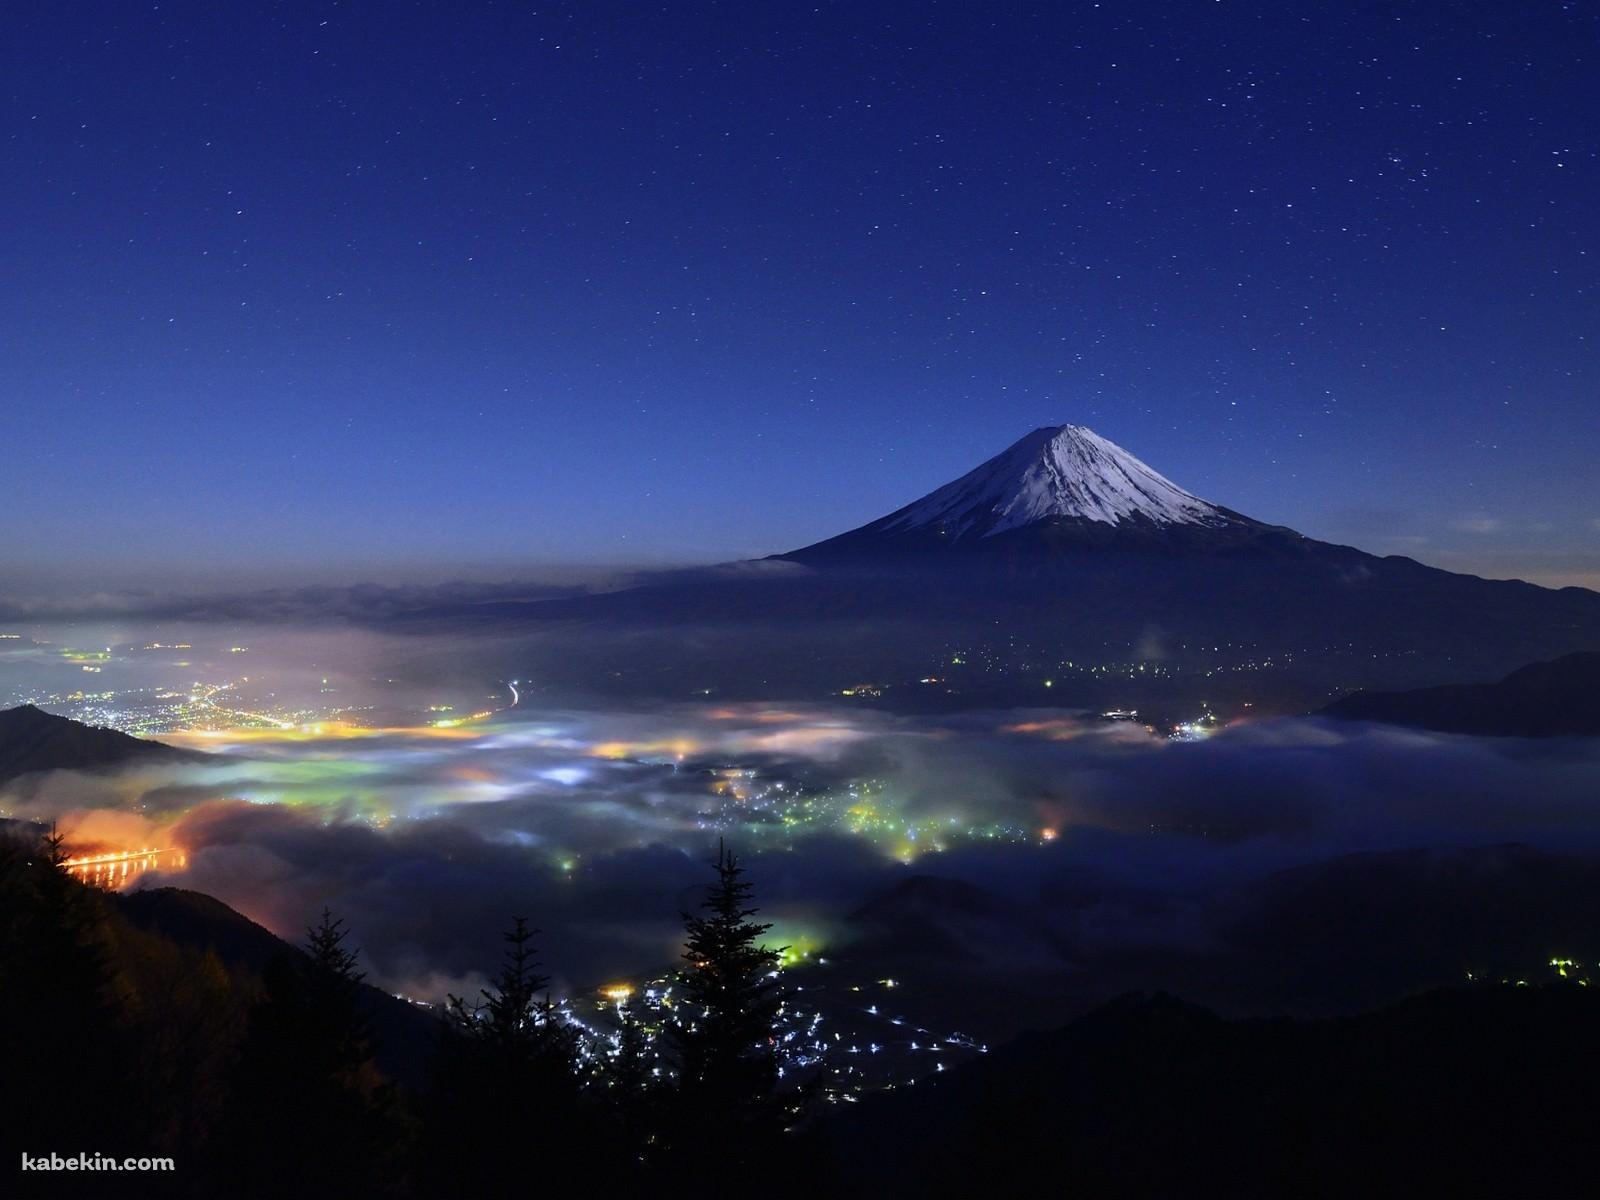 富士山と星空 日本 静岡県 山梨県の壁紙(1600px x 1200px) 高画質 PC・デスクトップ用